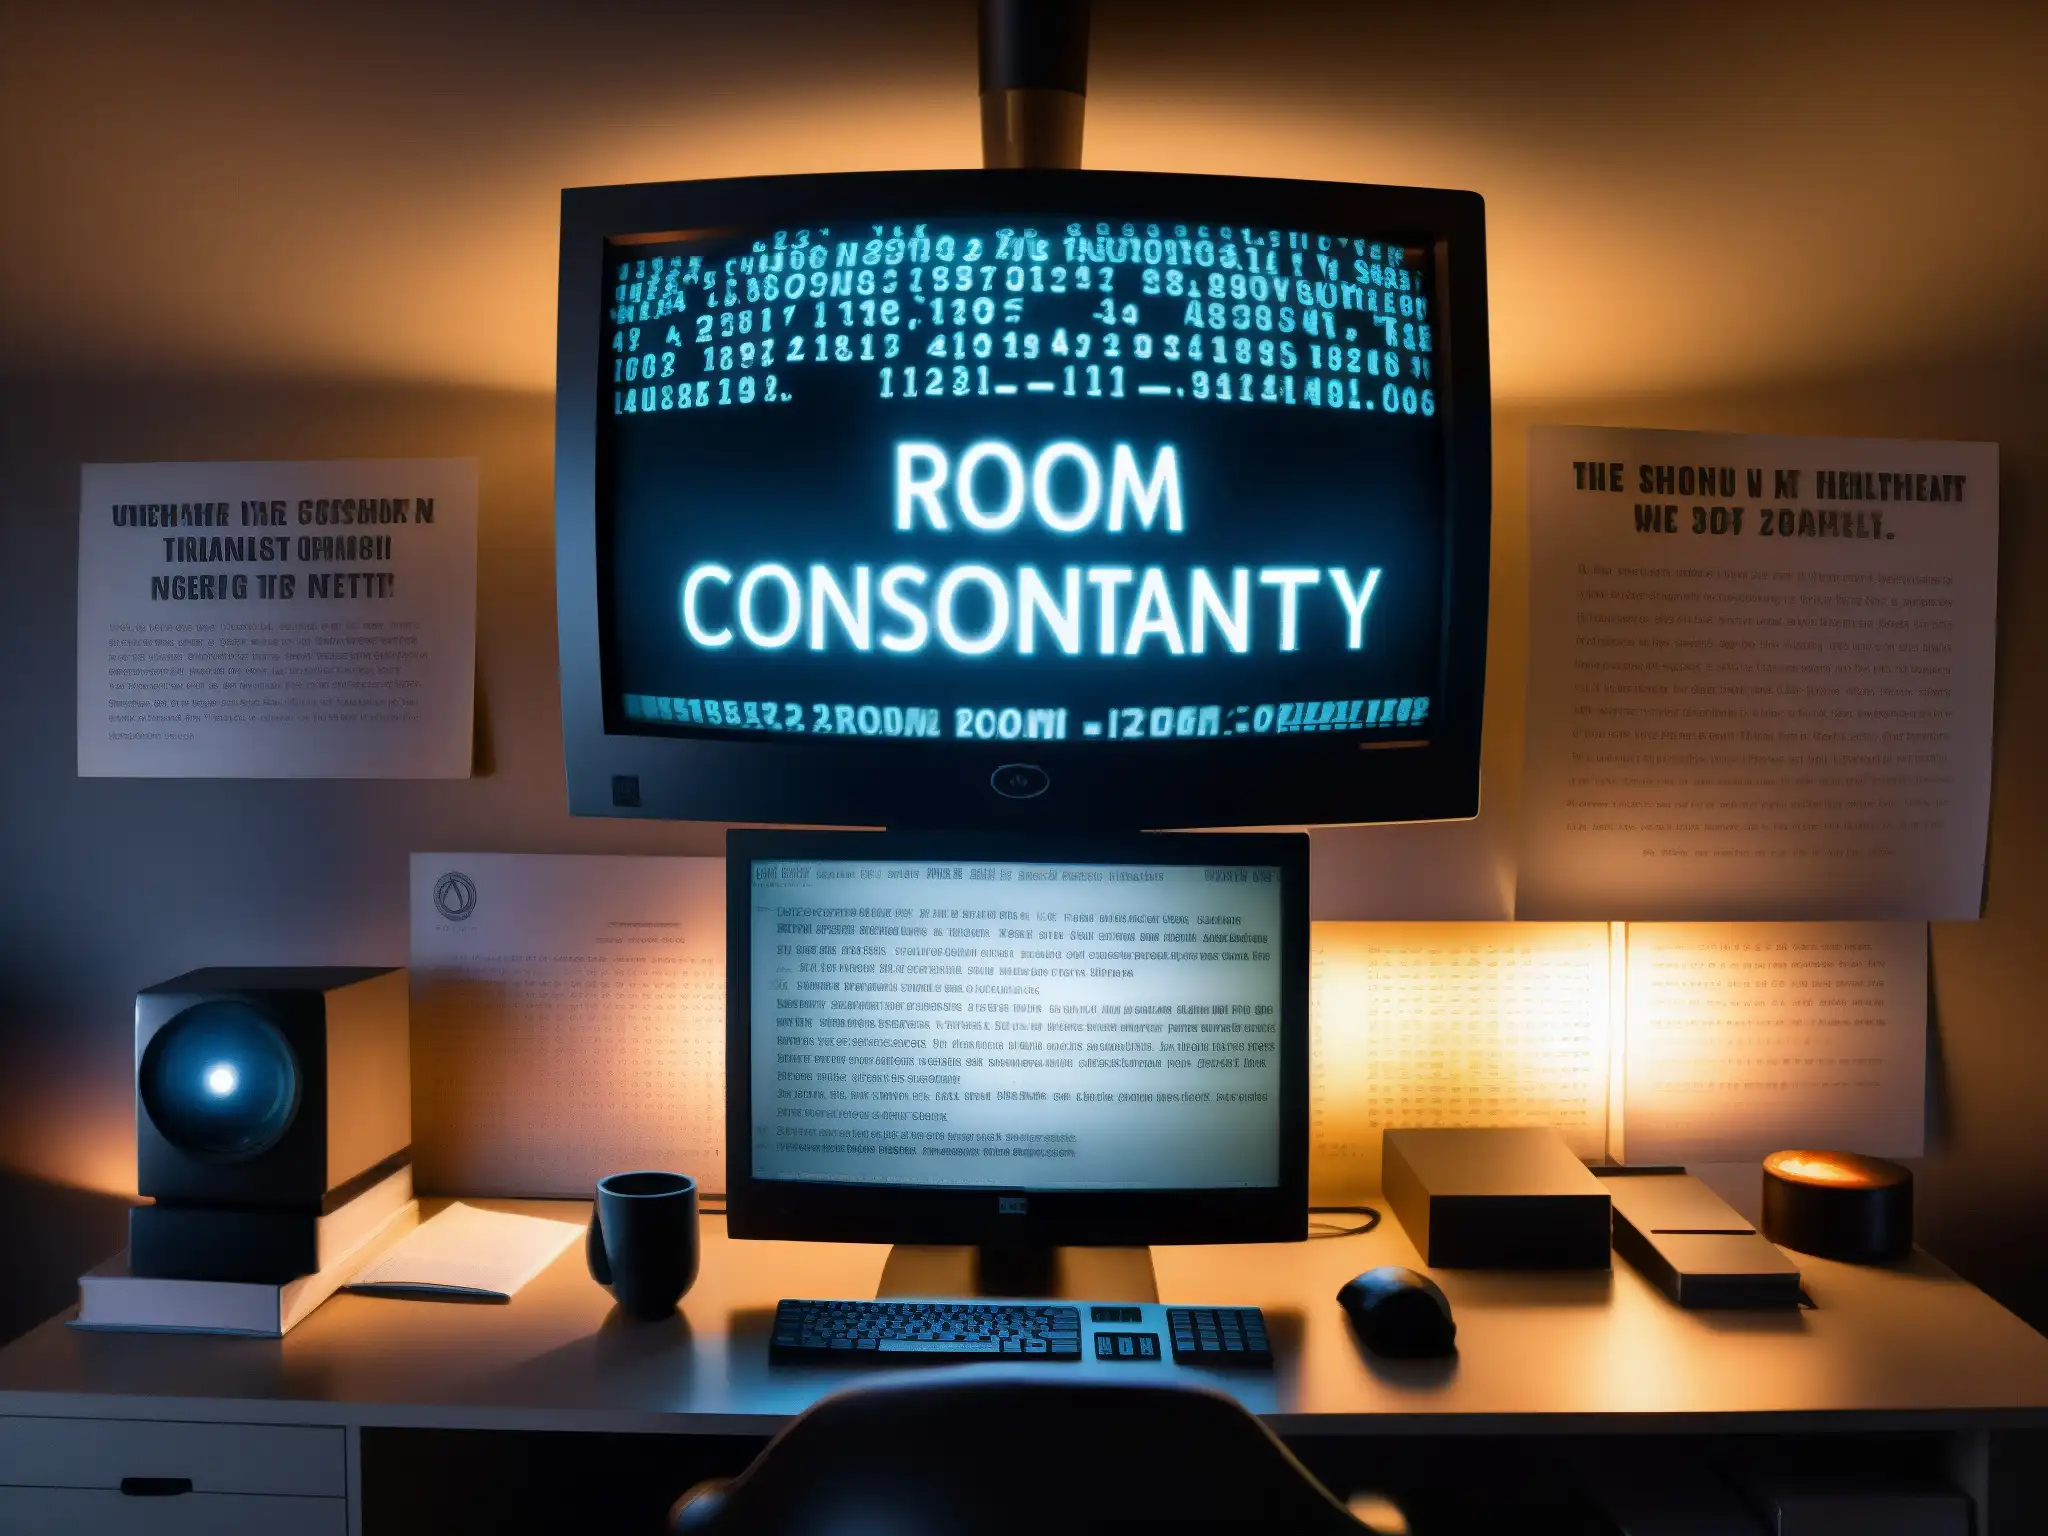 Un monitor iluminado en penumbra muestra mensajes y símbolos en una habitación oscura